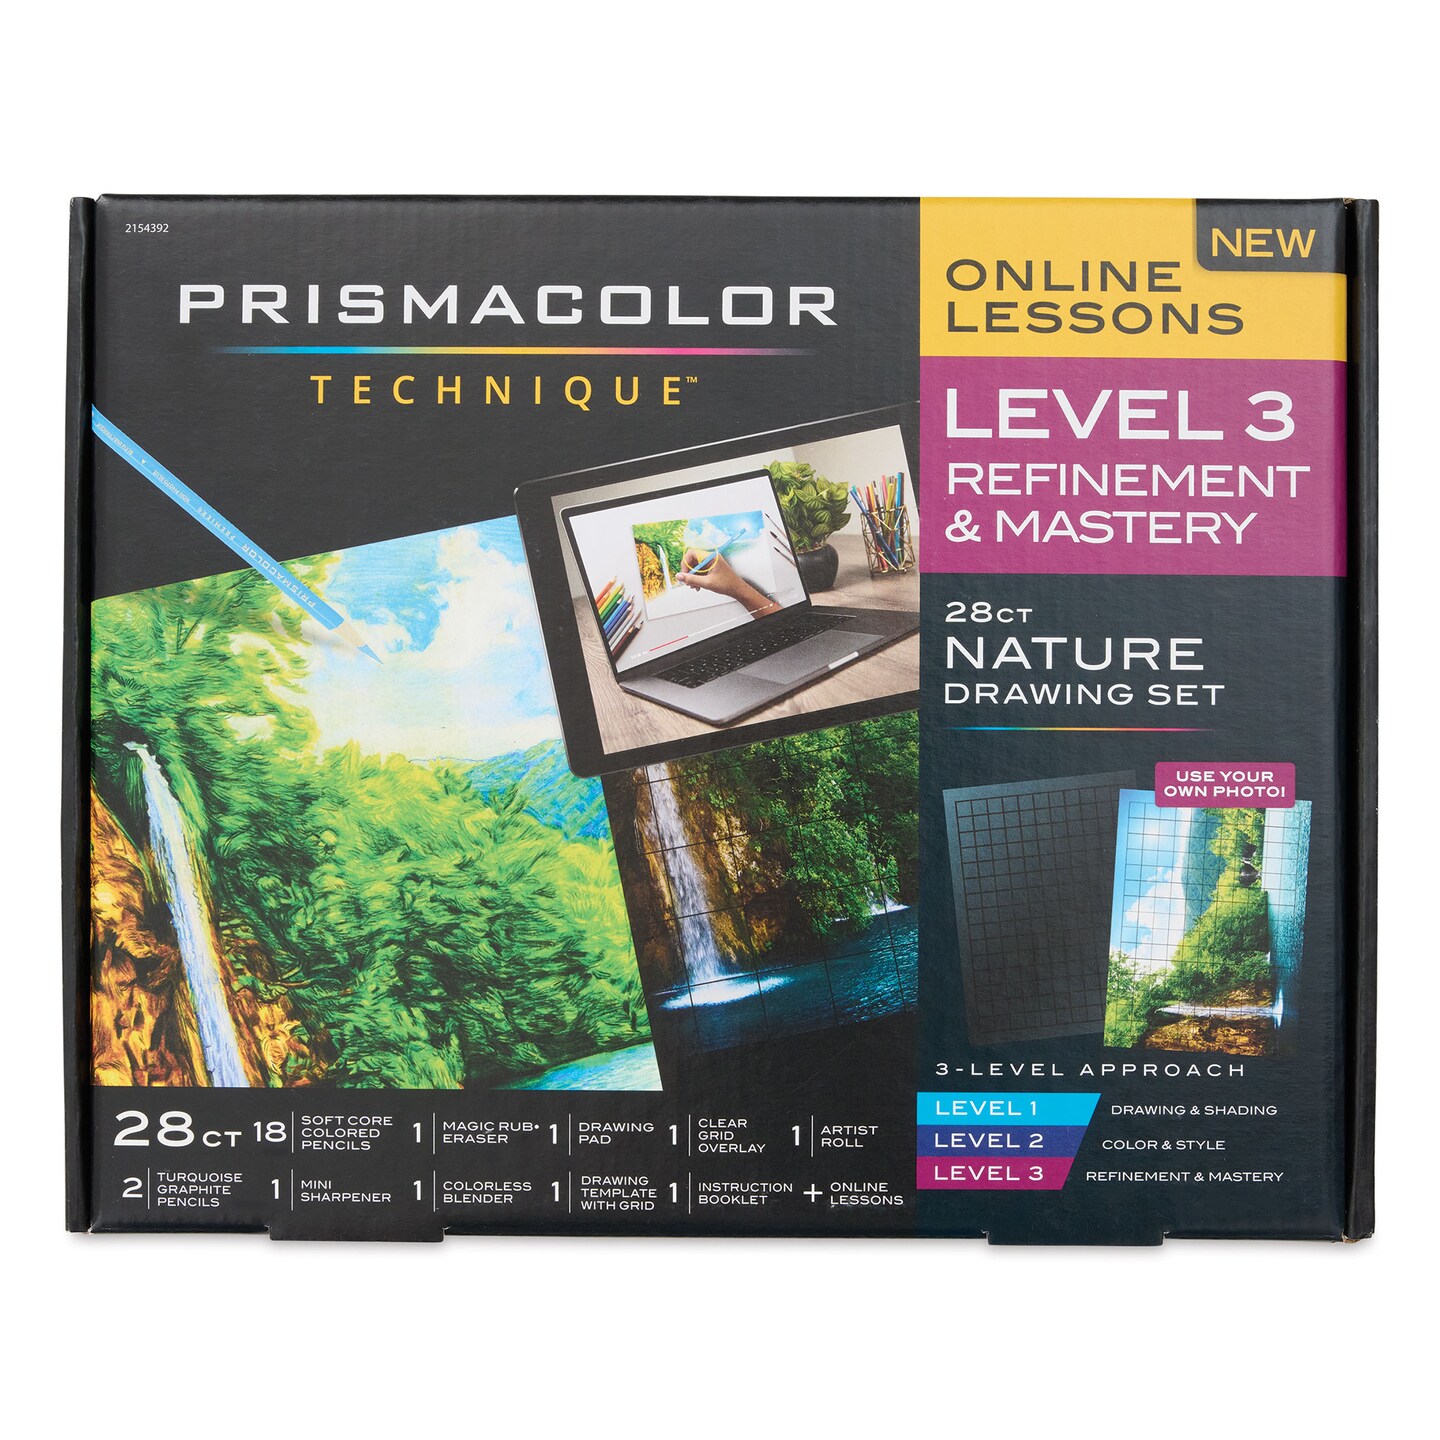 Prismacolor Technique Nature Drawing Set - Level 3, Refinement &#x26; Mastery